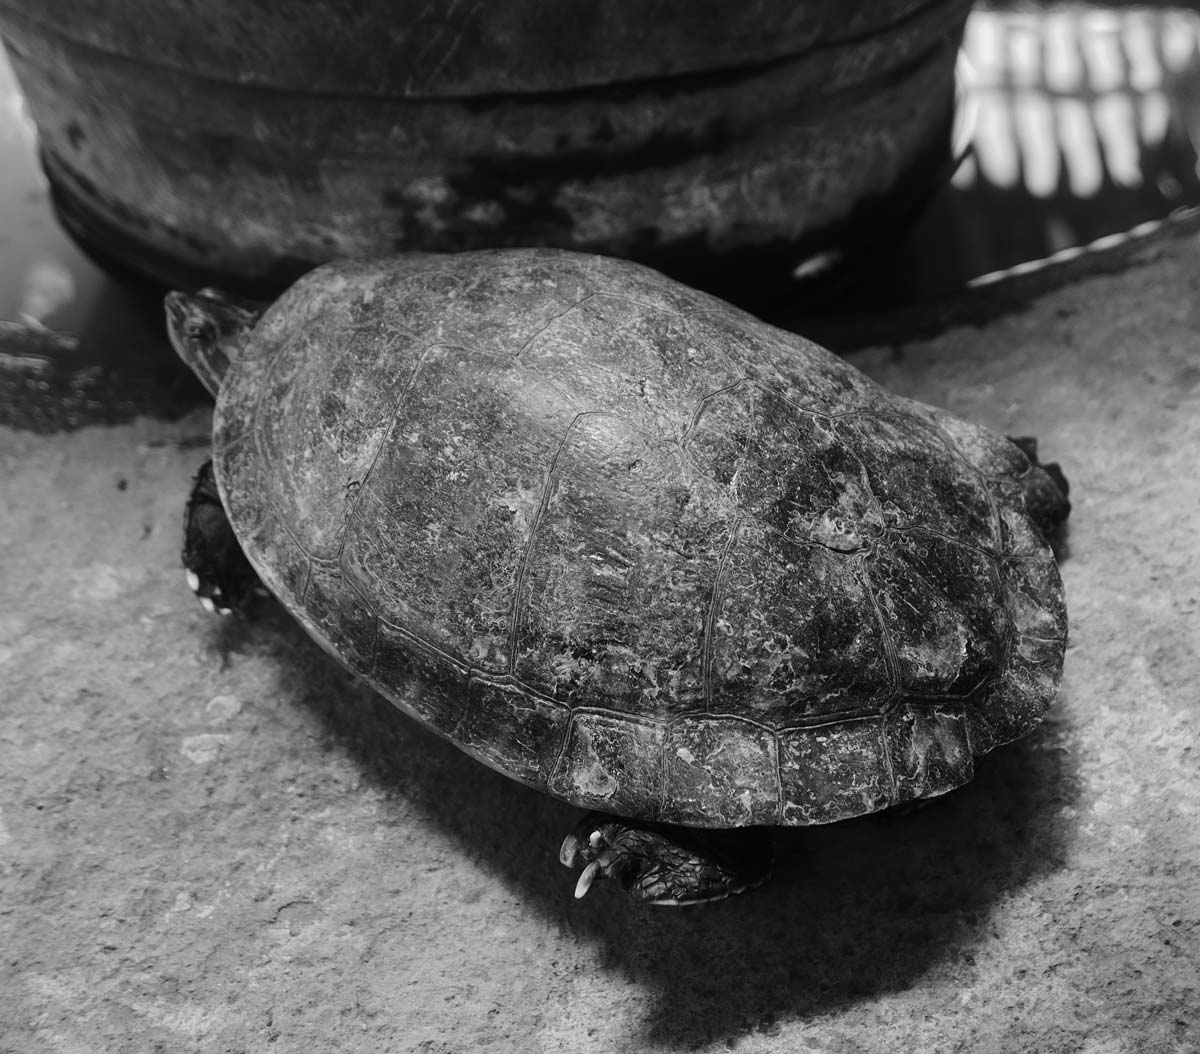 Turtle in Ortiz Gurdian museum in Leon, Nicaragua